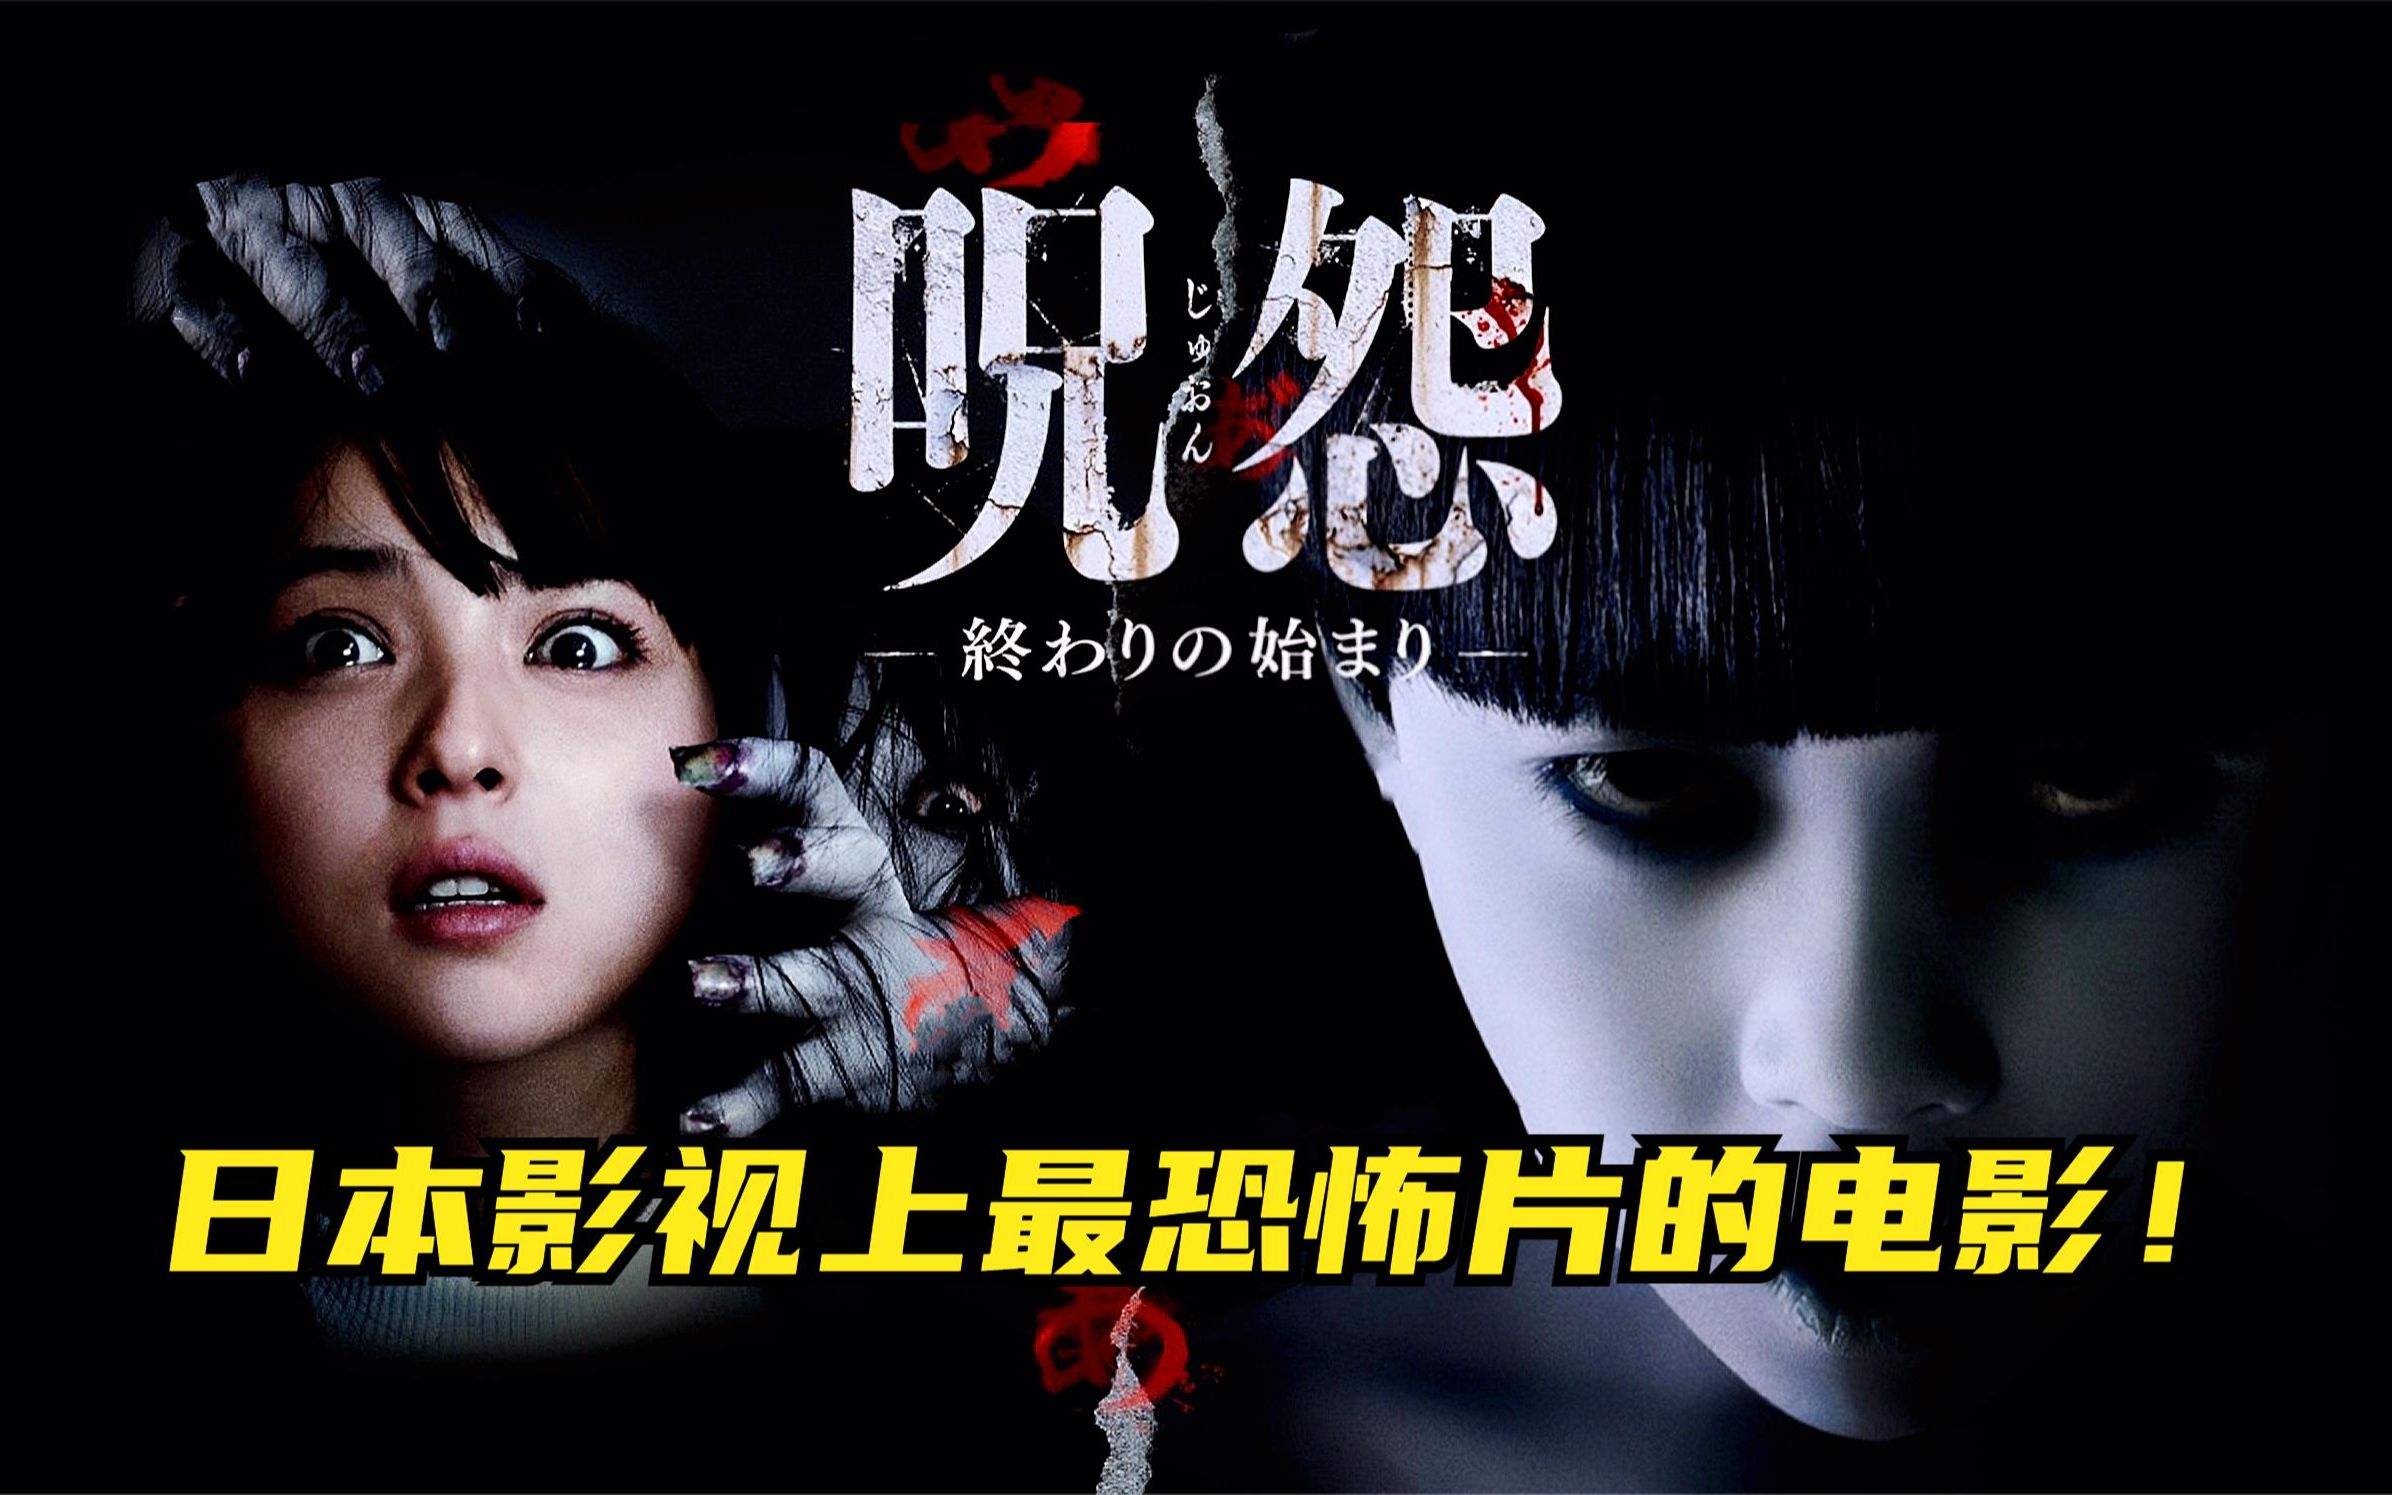 日本影史上最恐怖的电影《咒怨:终结的开始》,它来了!